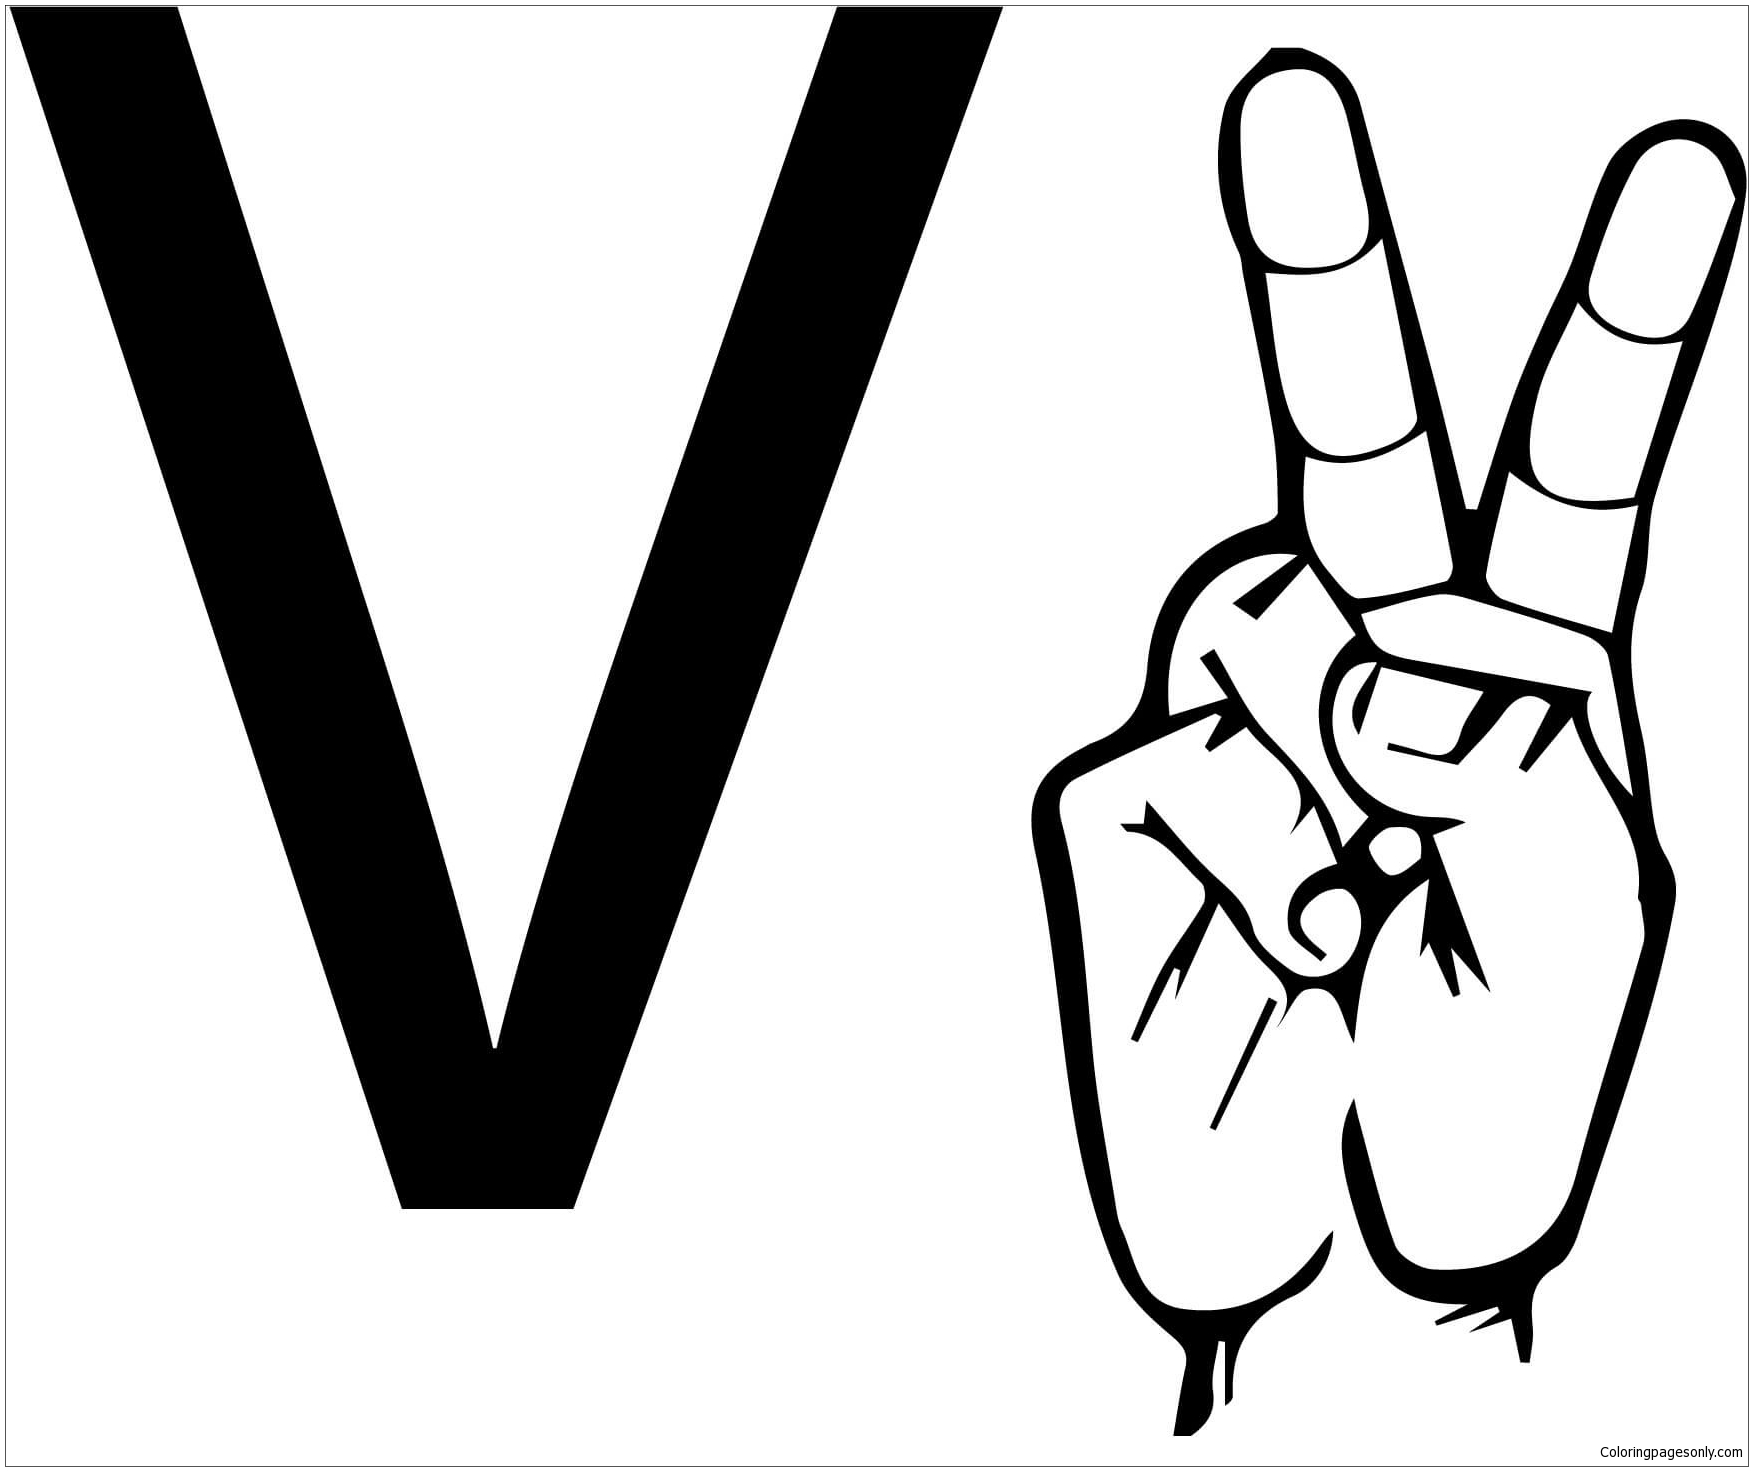 ASL-Gebärdensprache Buchstabe V aus Buchstabe V